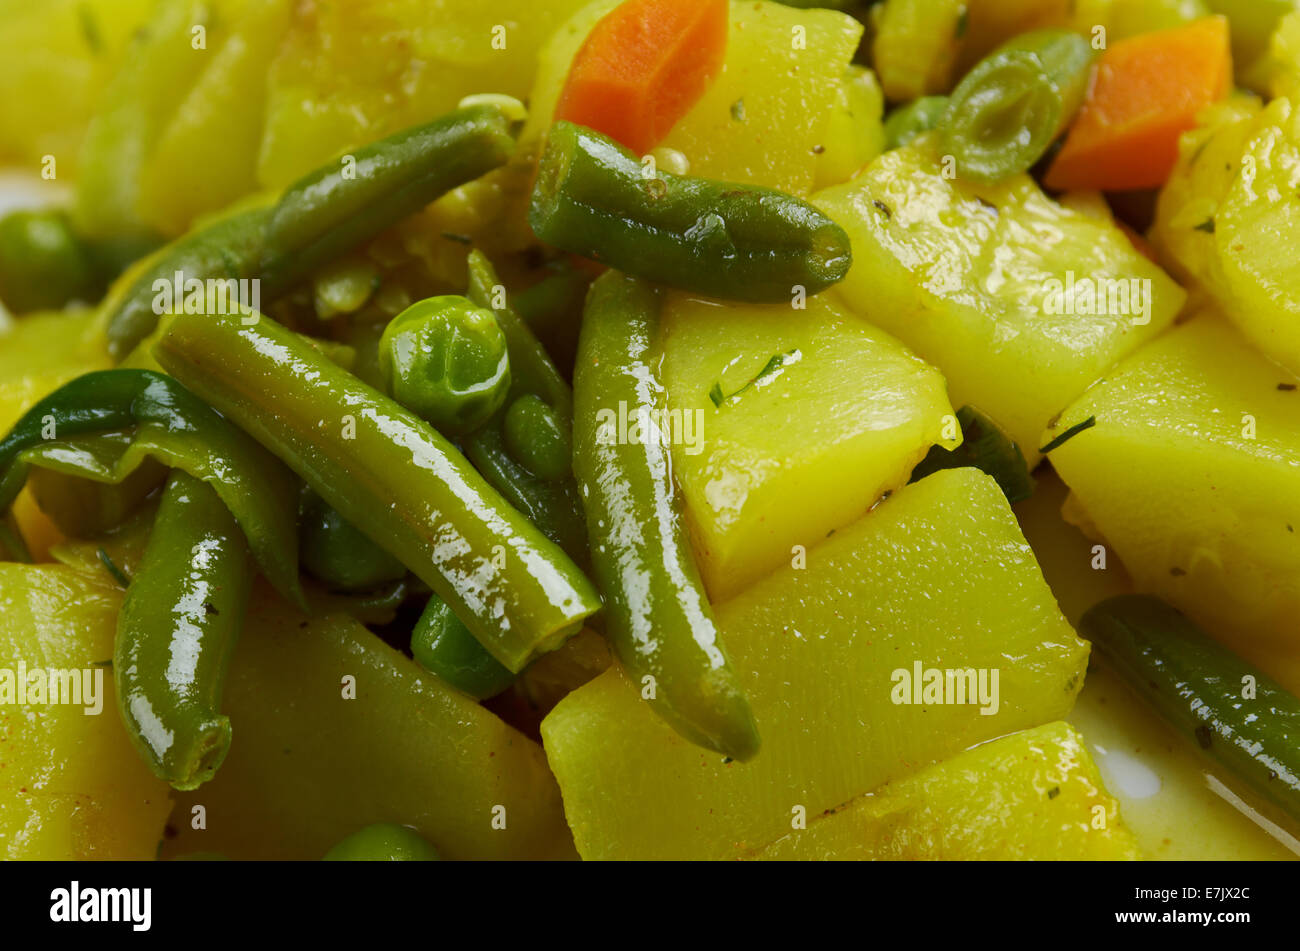 Zucchine in Umido Con Uova - italienischer Küche gedünsteten Zucchini mit Gewürzen Stockfoto